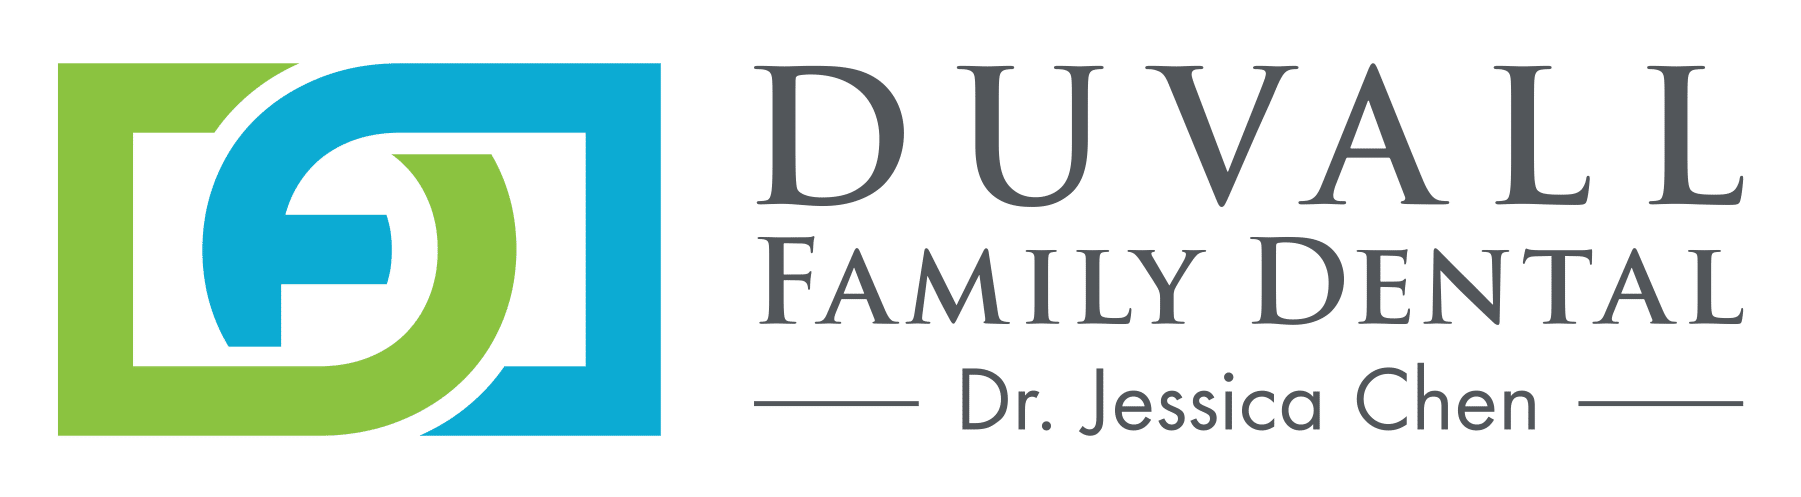 Duvall Family Dental - Silent Auction Table Sponsor - $1000